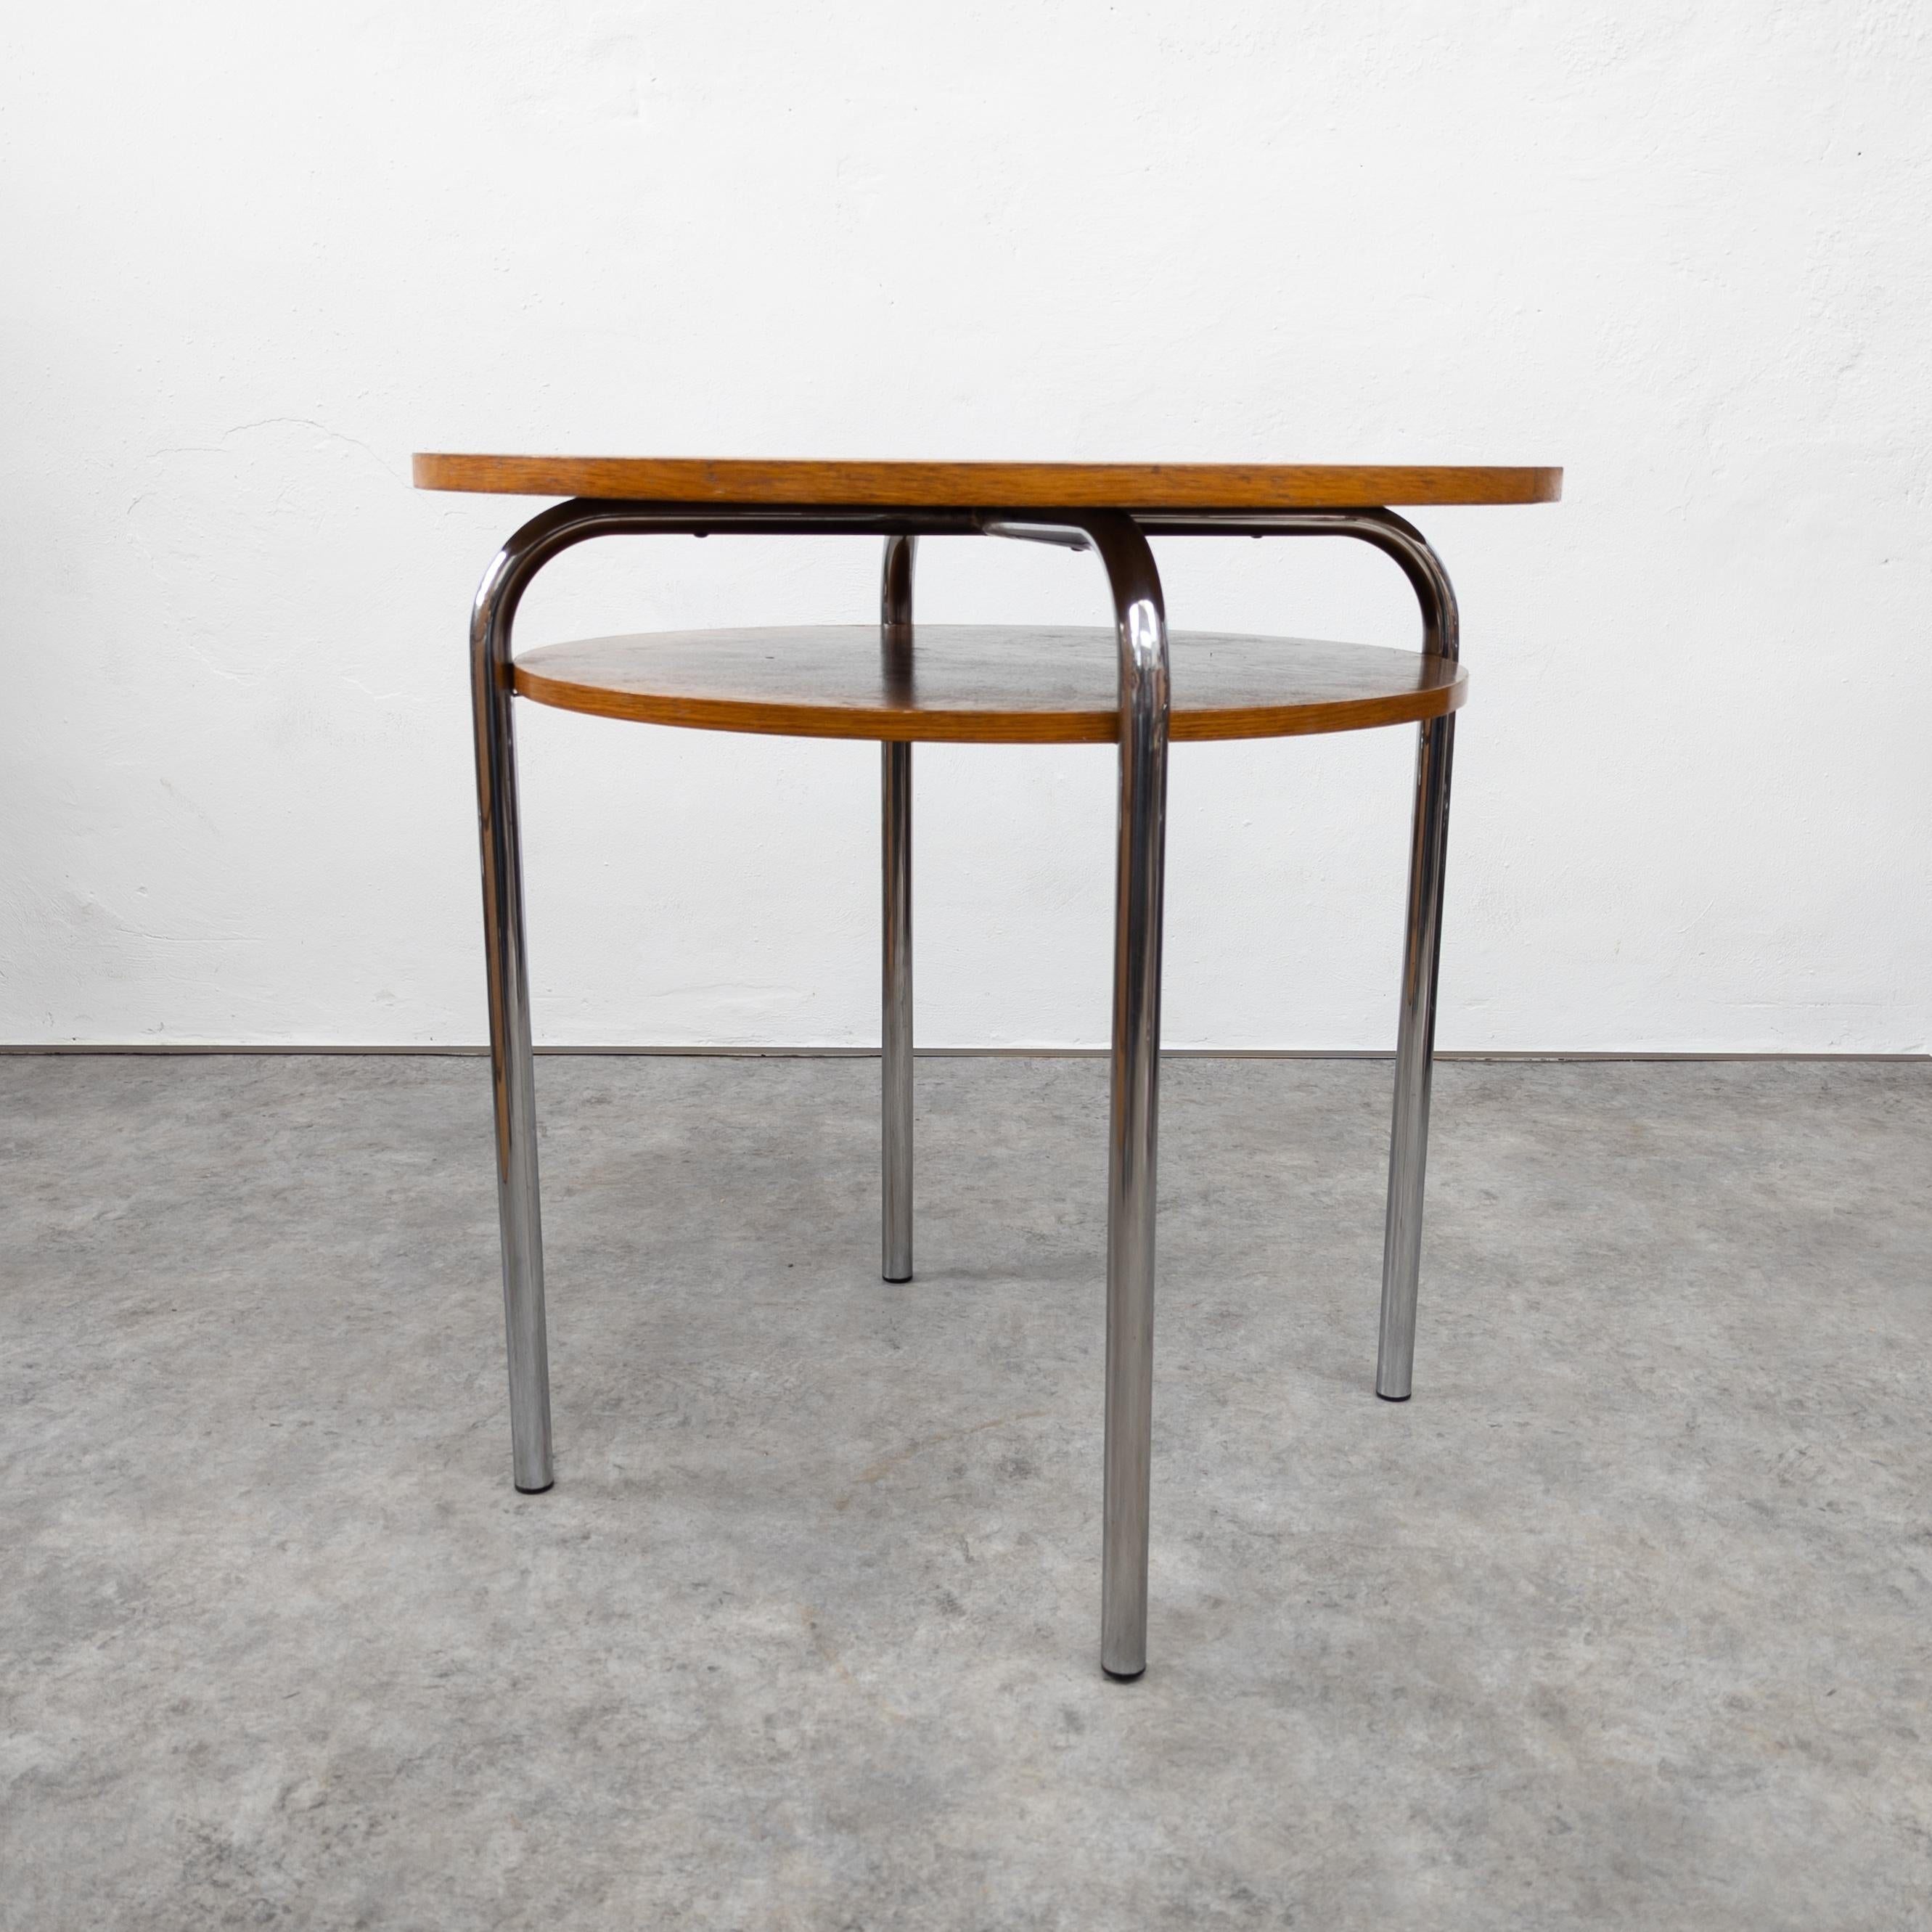 Variation de la table Ludwig Mies van der Rohe Thonet MR515. Fabriqué par Vichr and Co. dans l'ancienne Tchécoslovaquie dans les années 1930. En bon état d'origine avec quelques traces d'usure et d'âge sur le plateau en bois, chrome très bien